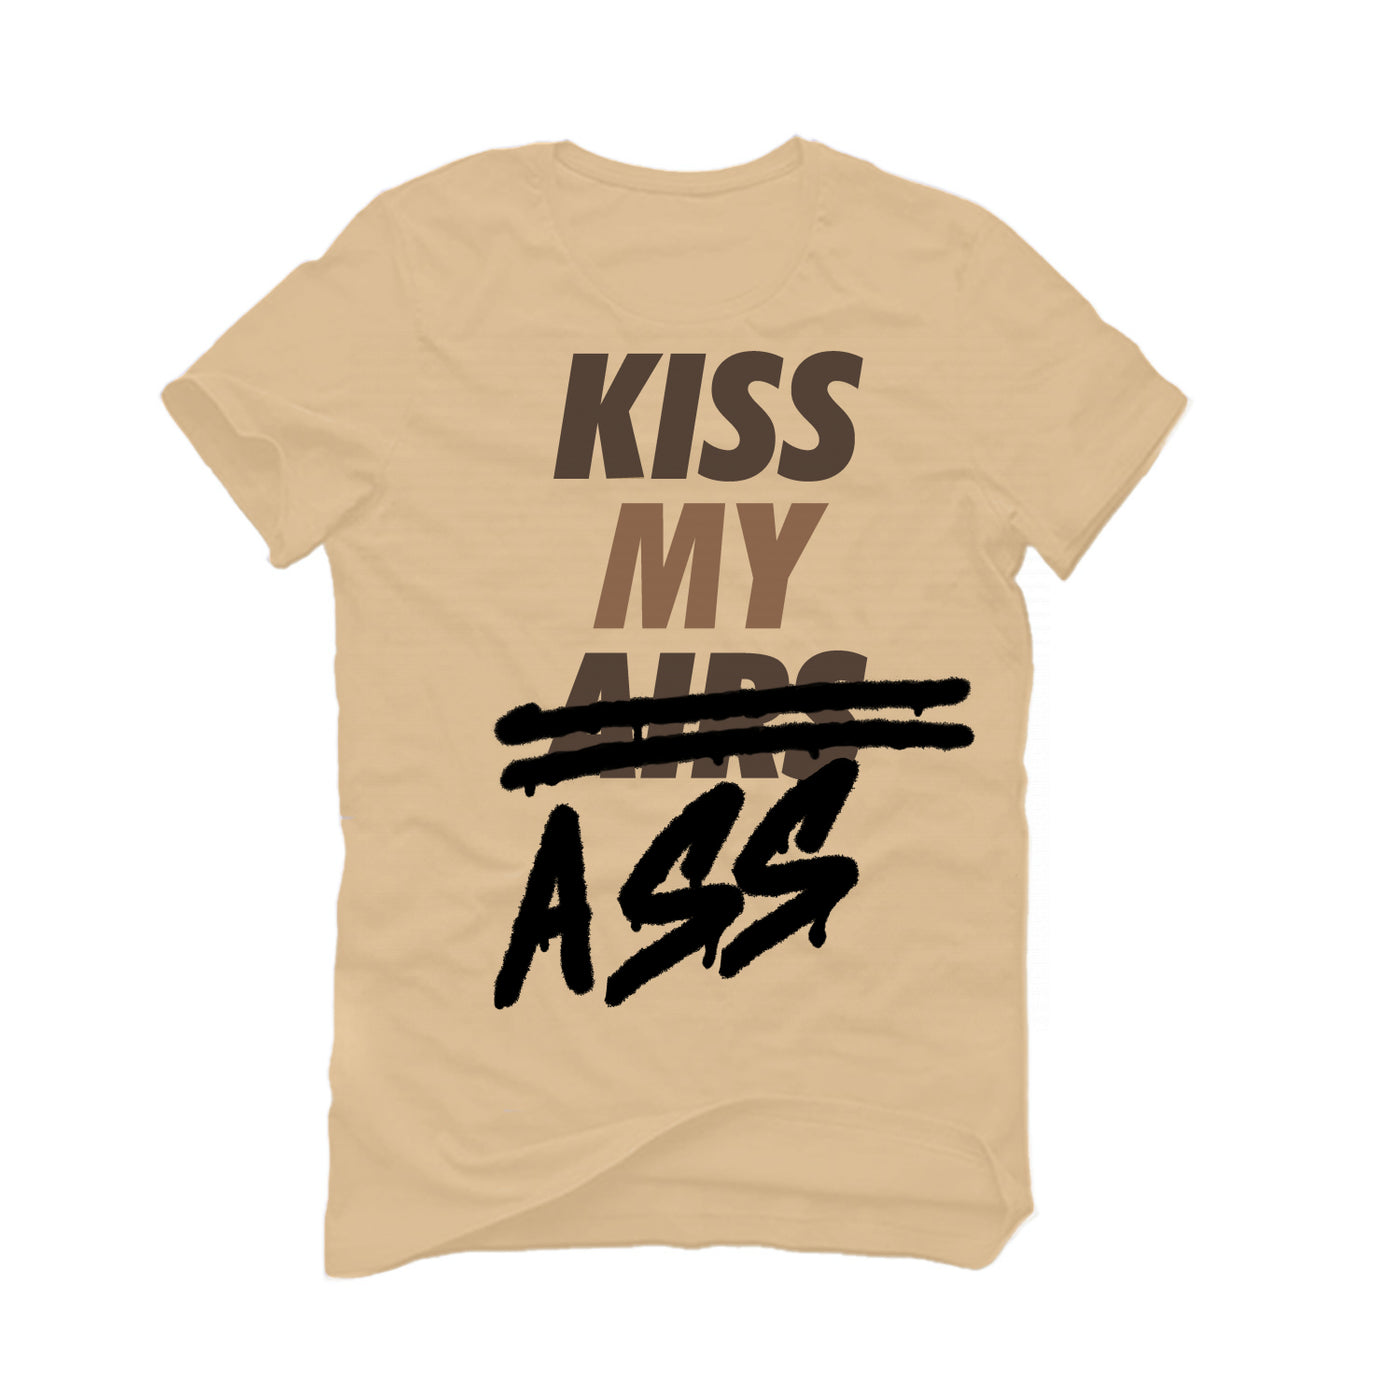 Air Jordan 3 "Palomino" Tan T-Shirt (KISS MY AIRS)